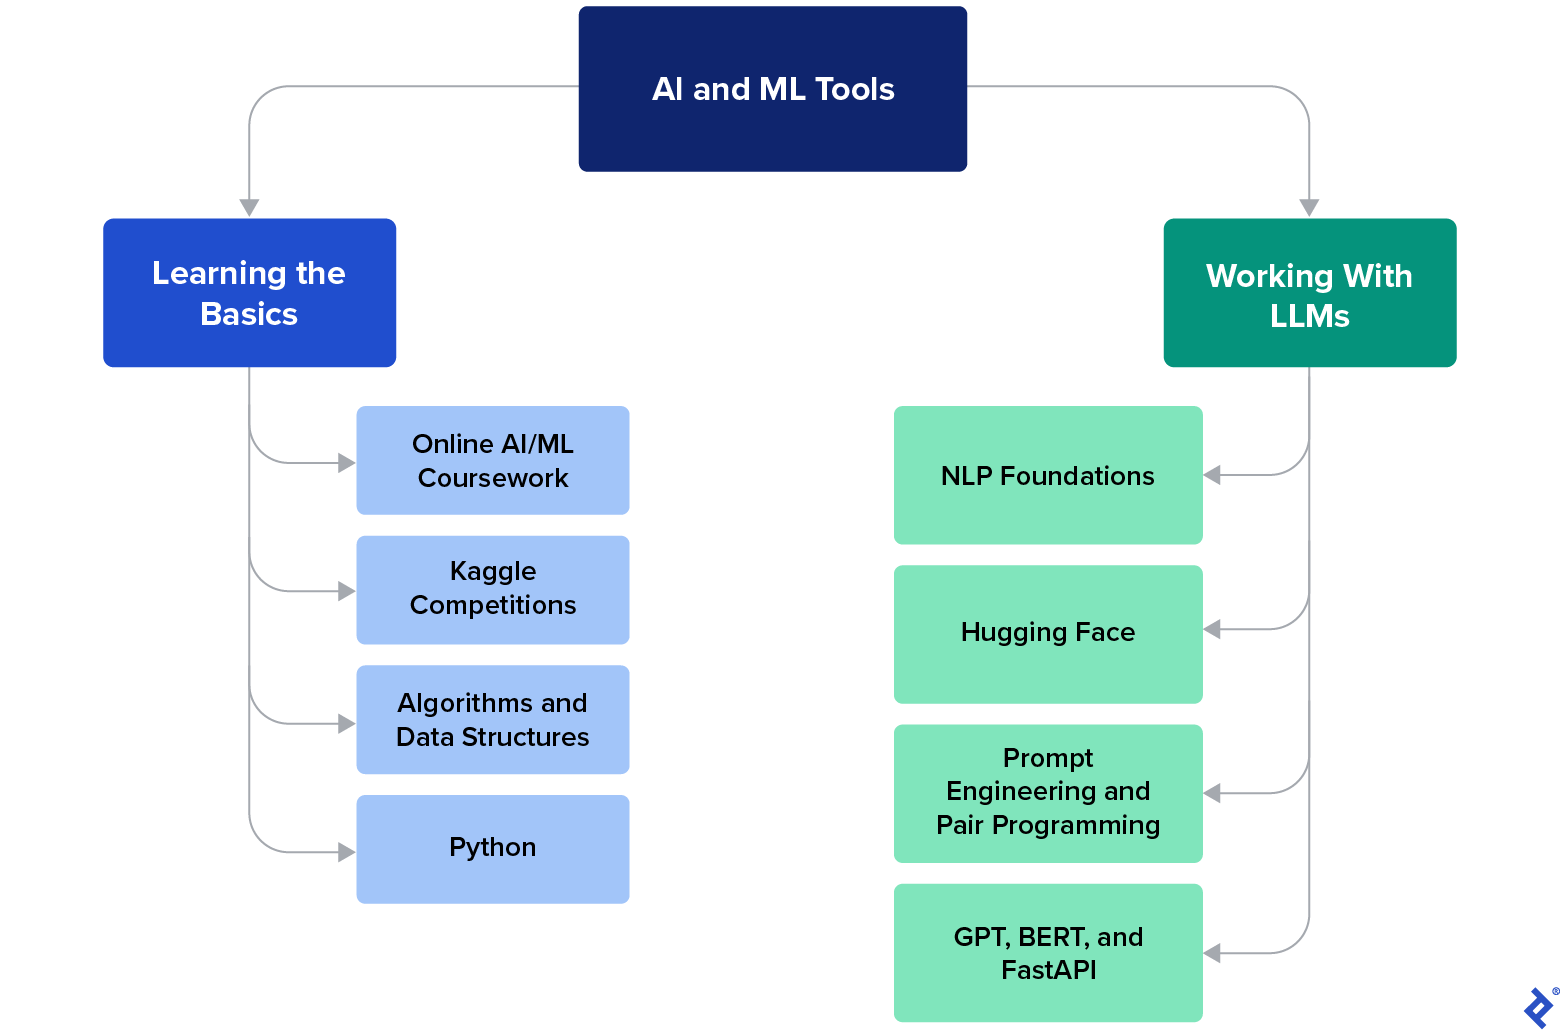 Un tableau des ressources de base en IA, telles que les compétitions Python et Kaggle, et des recommandations d'outils LLM, telles que Hugging Face, GPT, BERT et FastAPI.